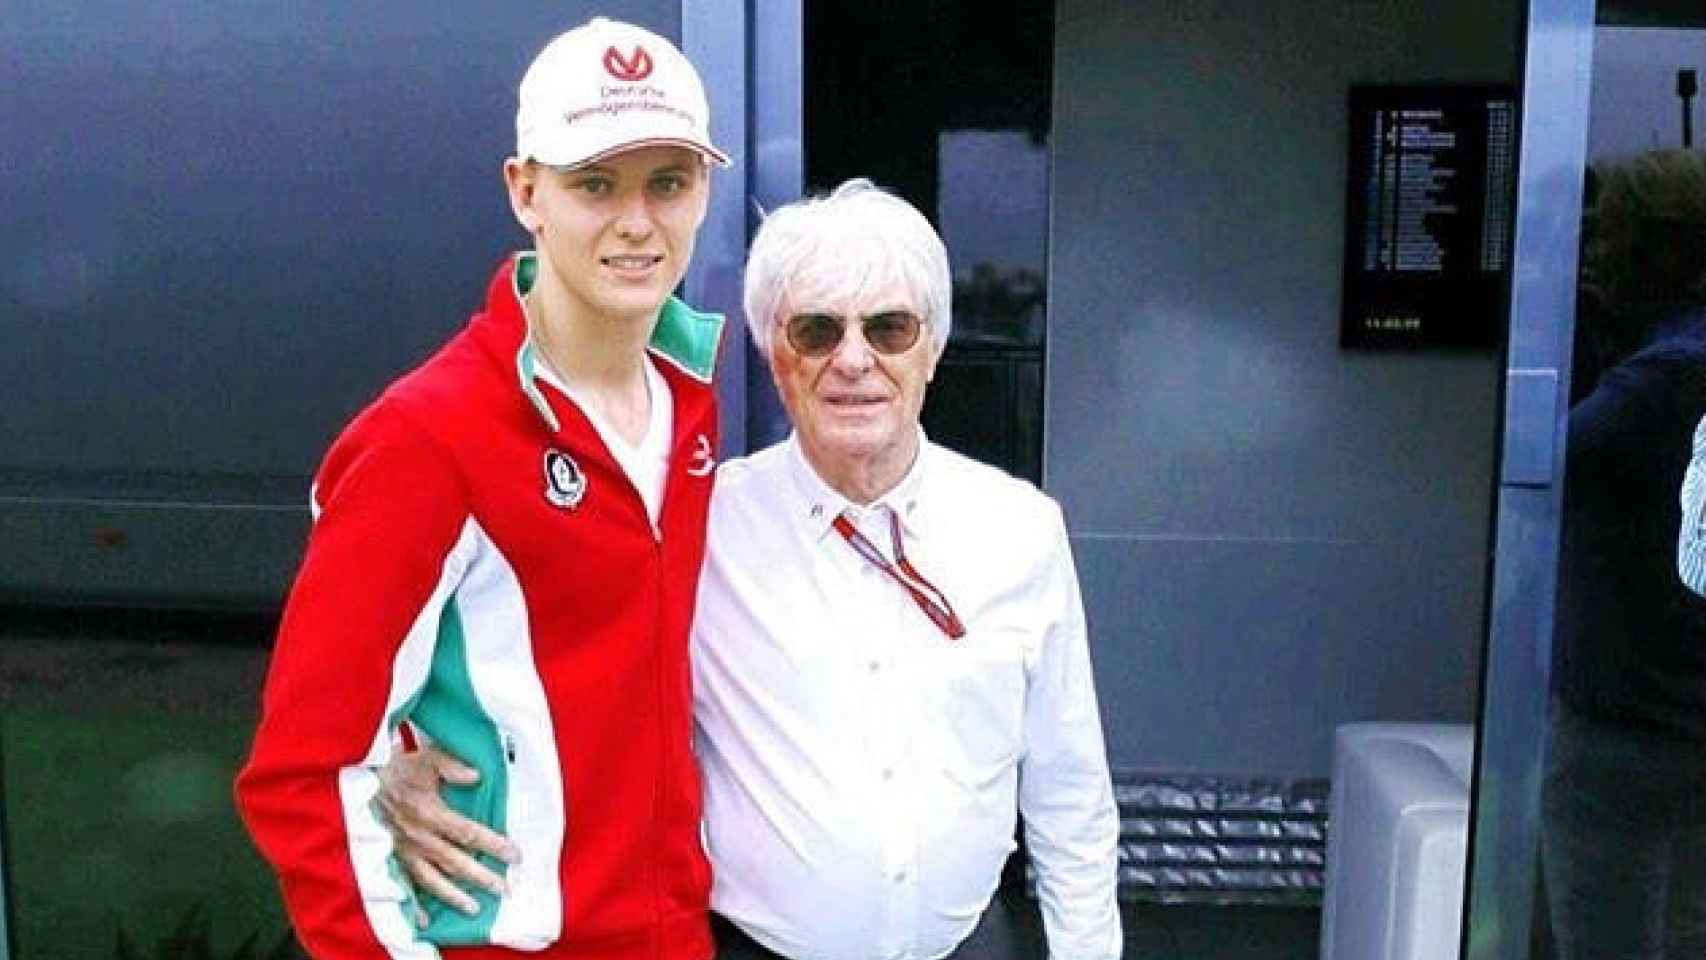 El joven Mick Schumacher con Bernie Ecclestone, patrón de la Fórmula 1